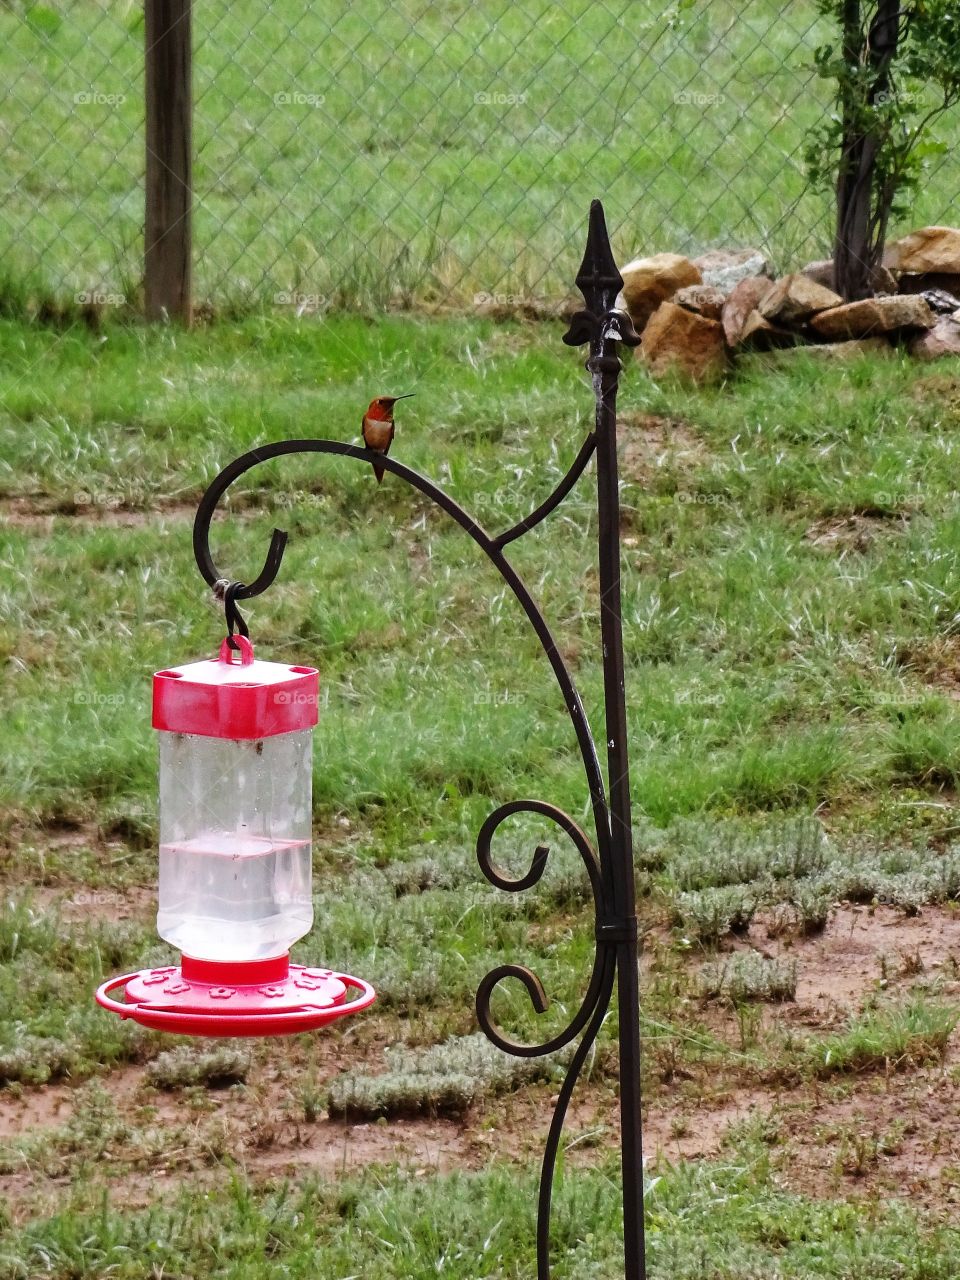 Hummingbird in the backyard